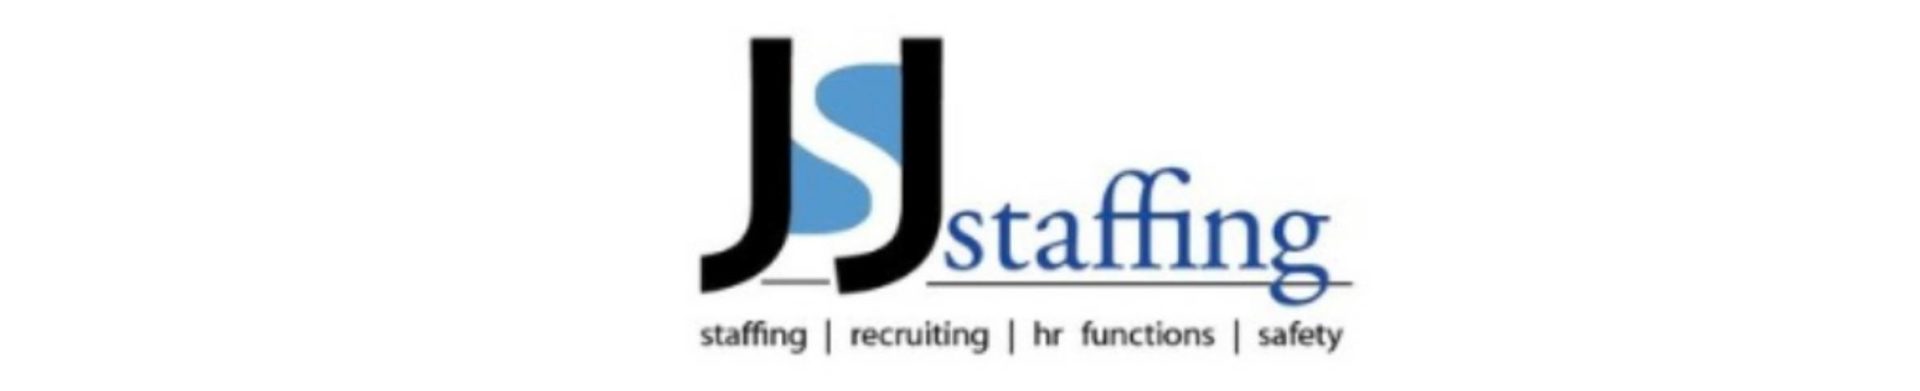 JSJ Staffing logo